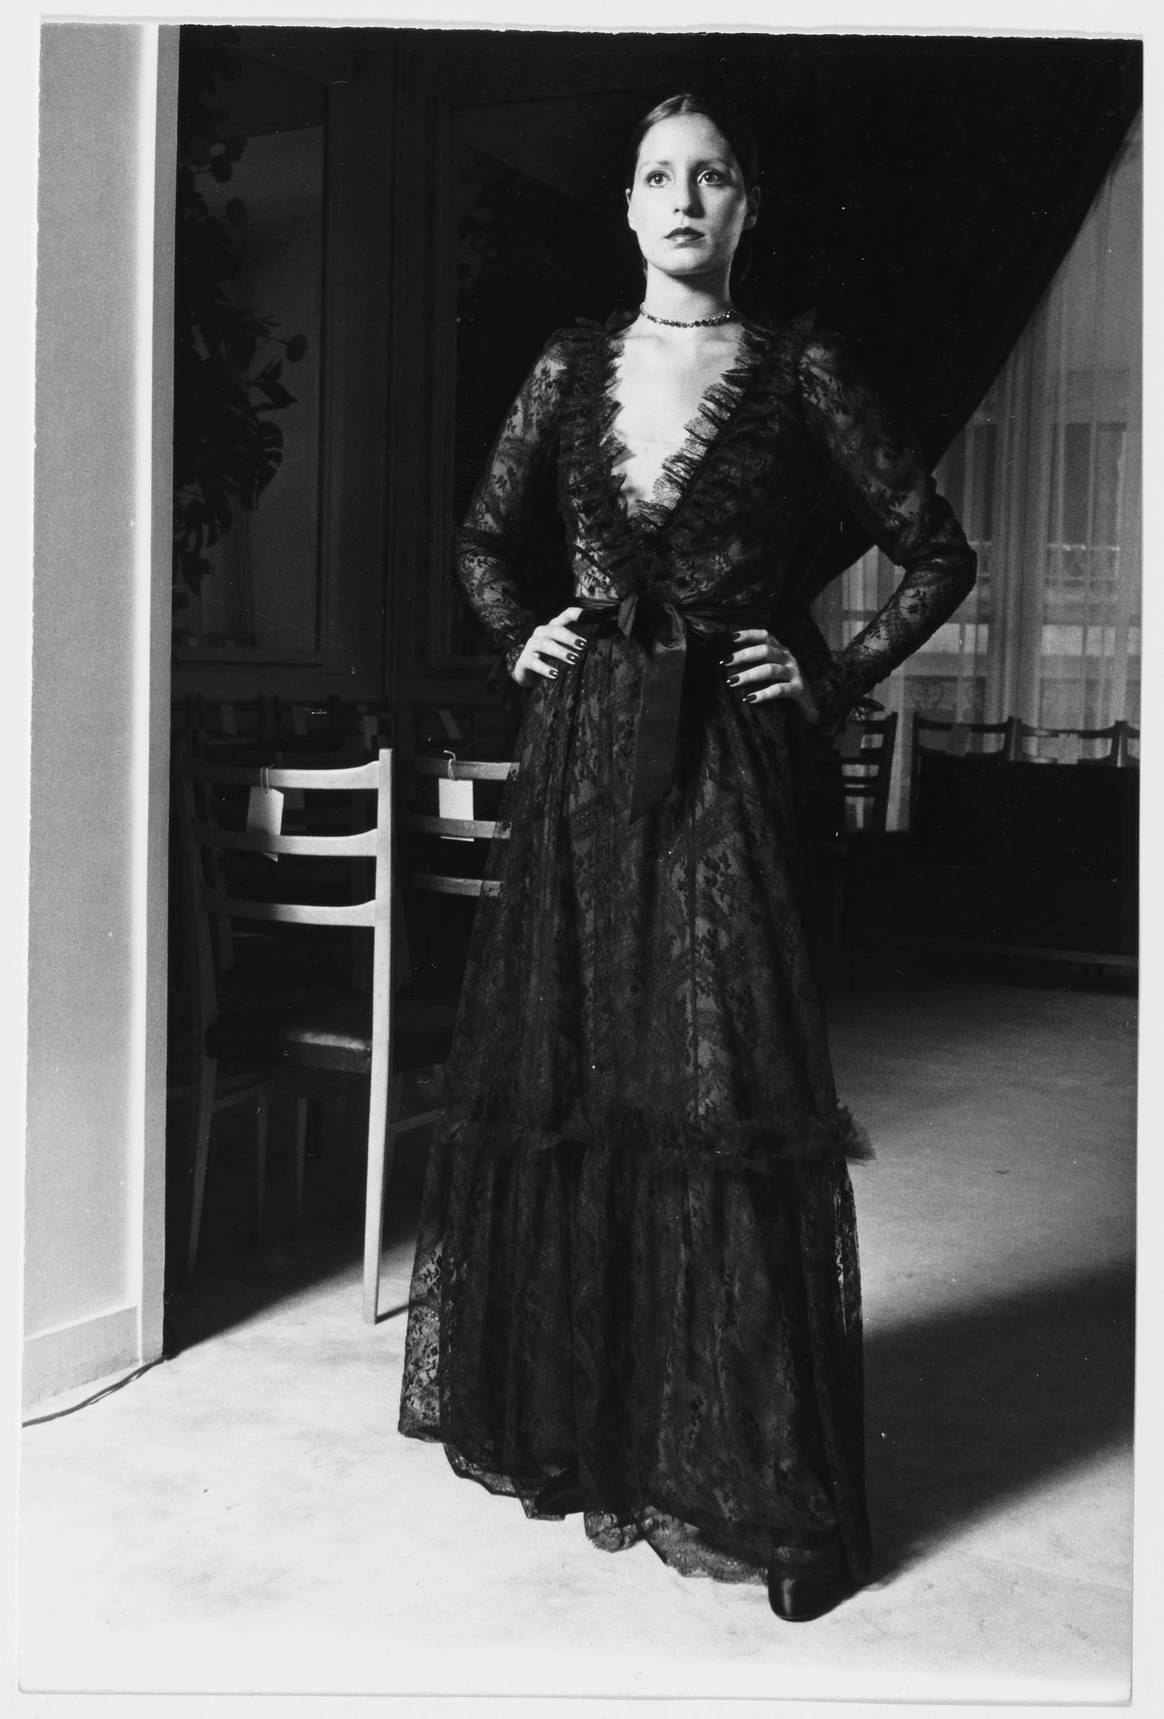 Image: Yves Saint Laurent / Droits réservés; Robe du soir portée par Elsa Faùndez de Dodero - haute couture autumn/winter 1971